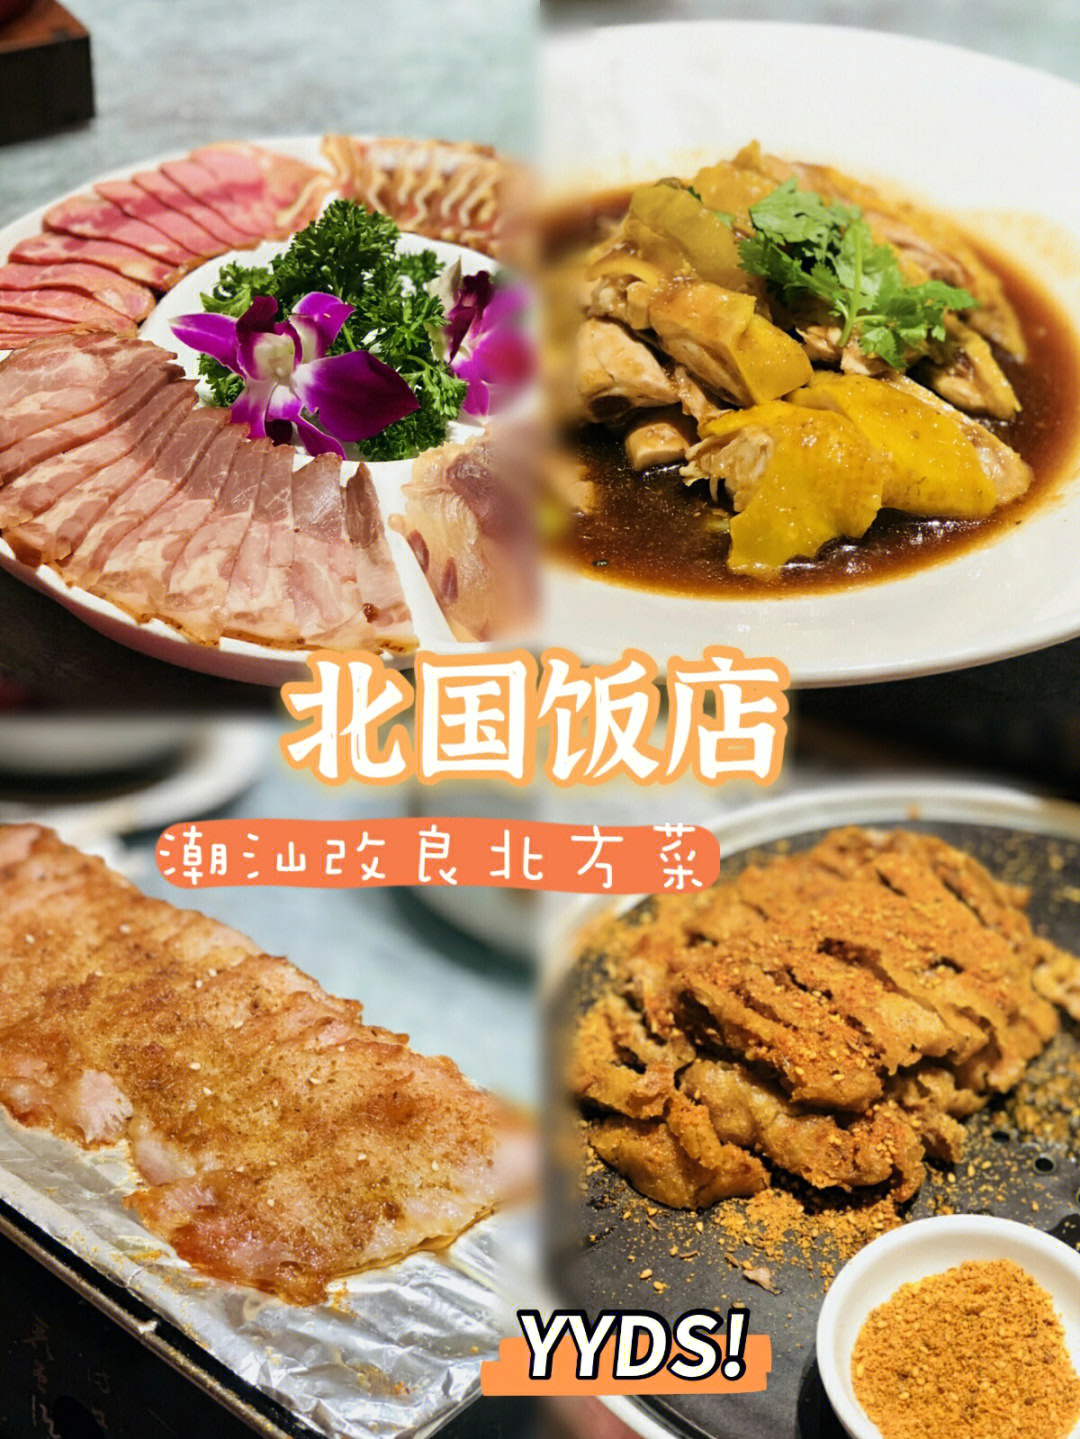 北国饭店菜单 汕头图片